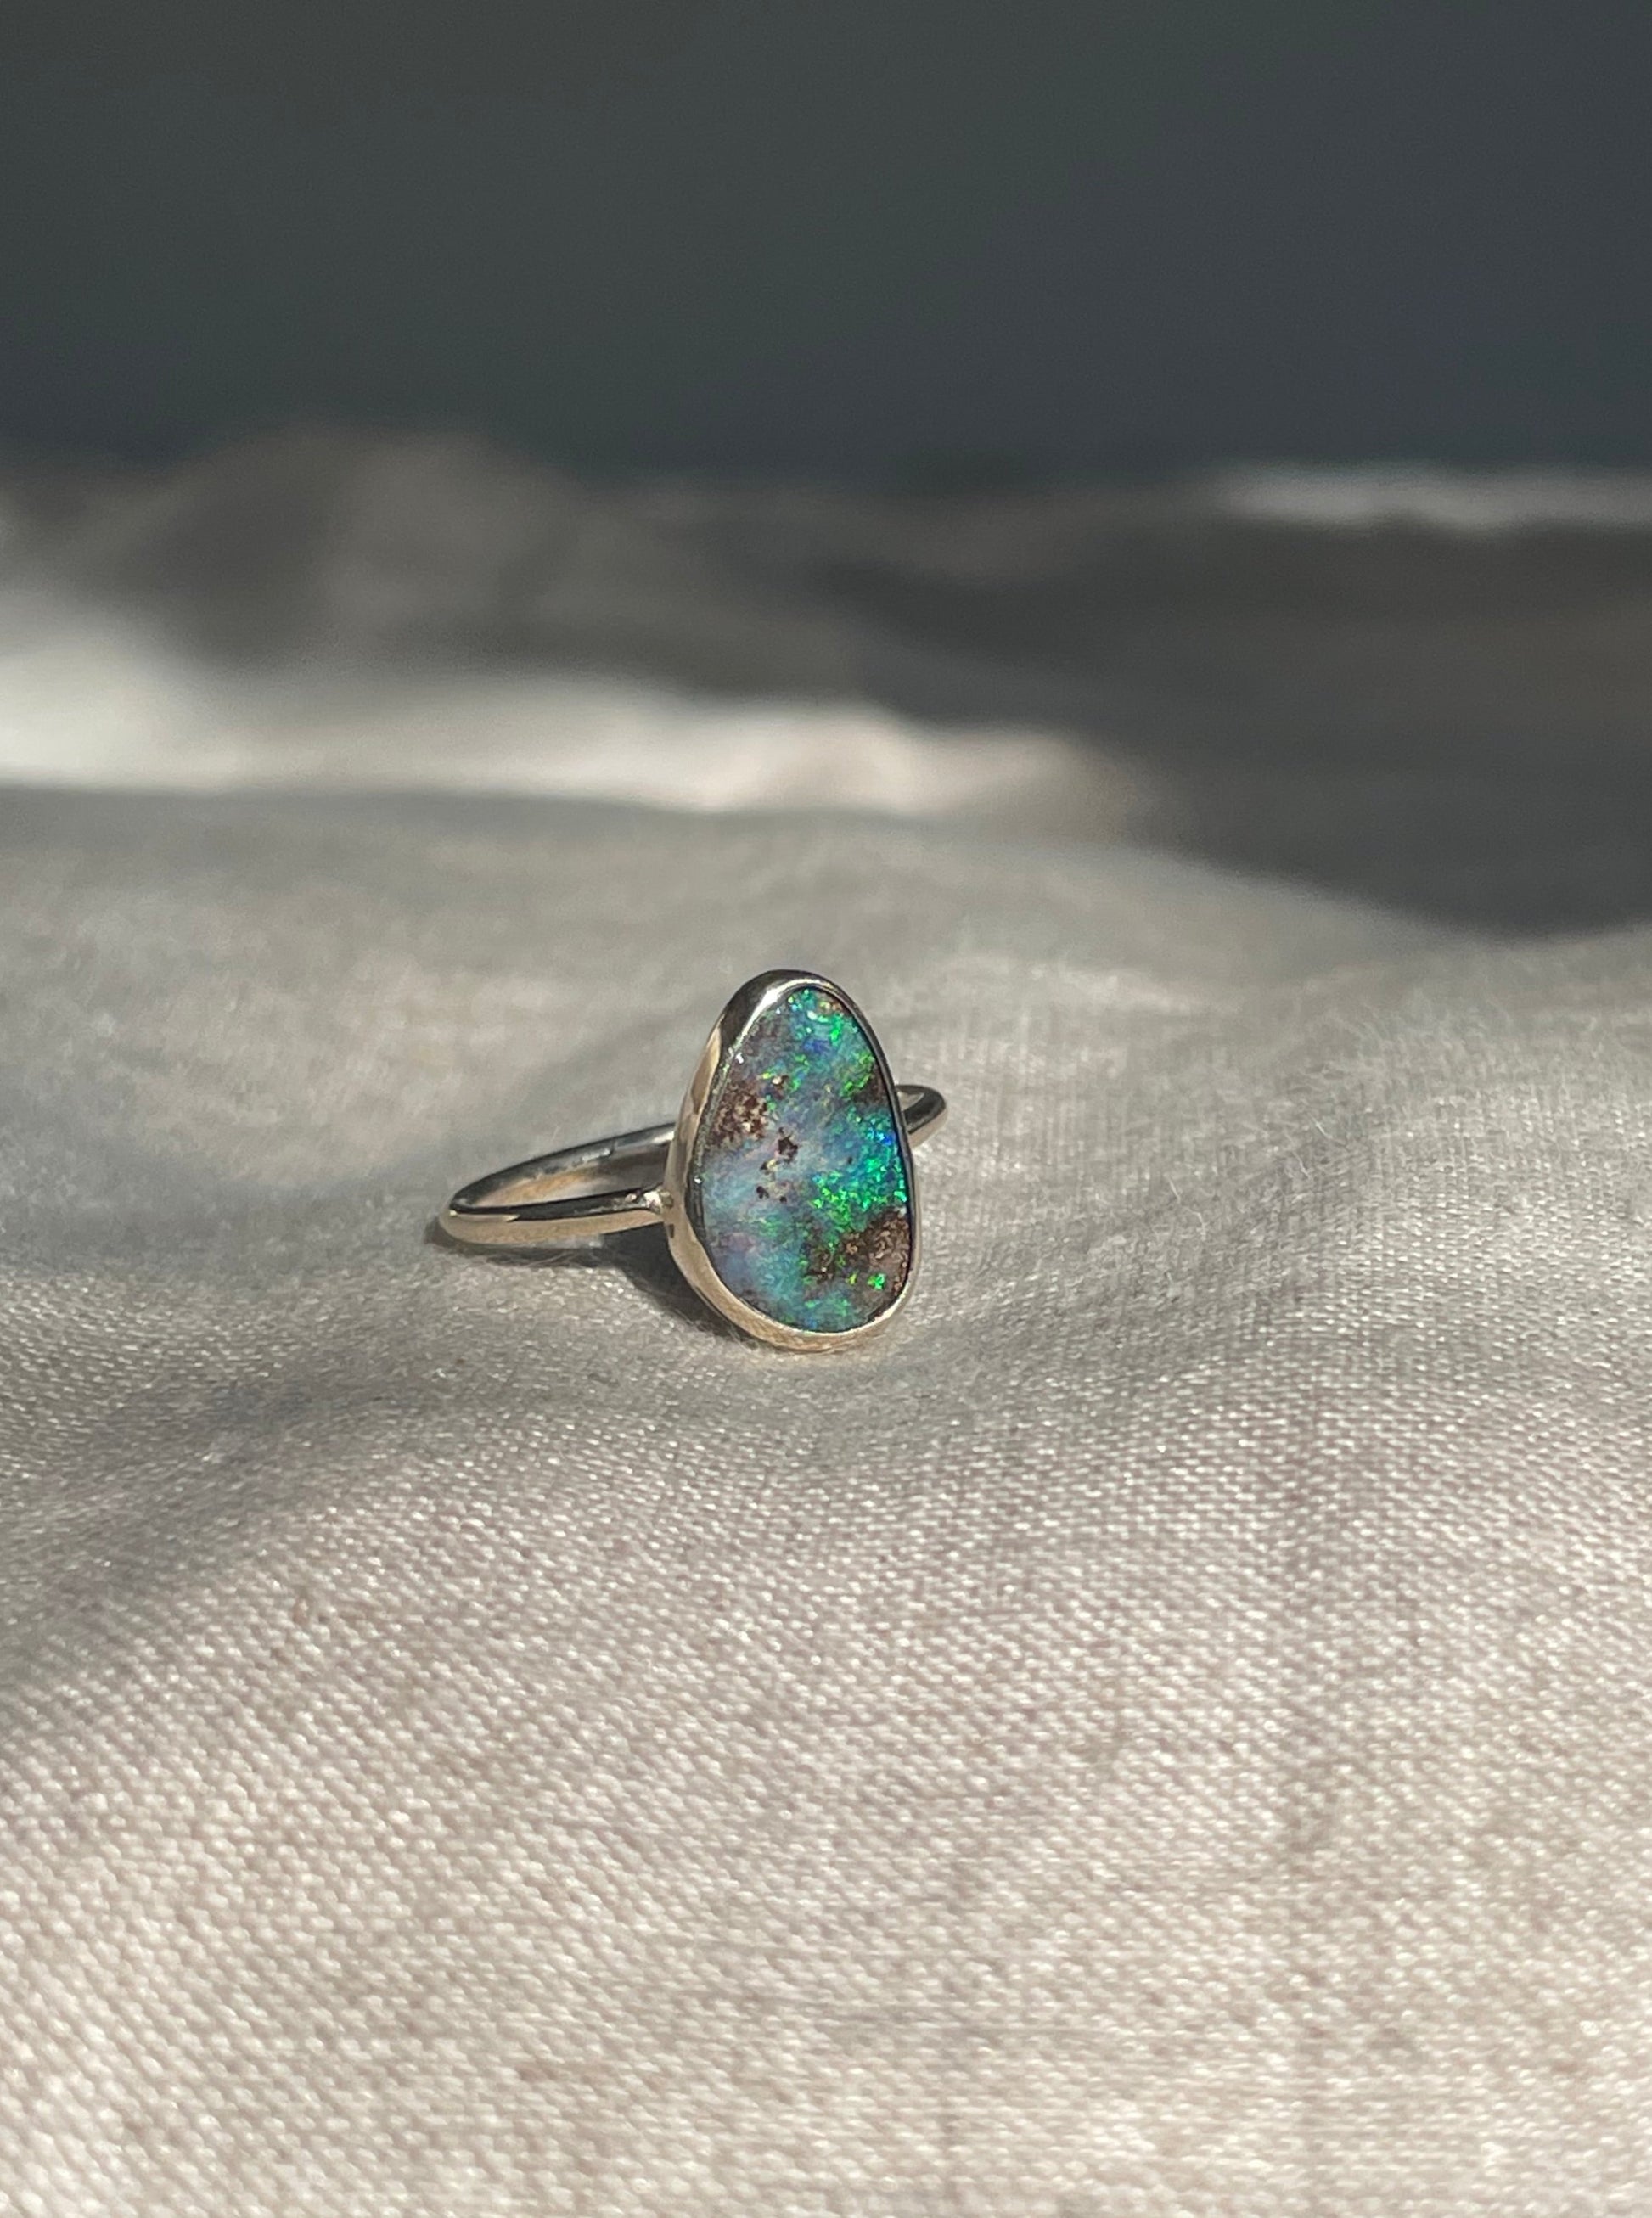 Bouler opal ring